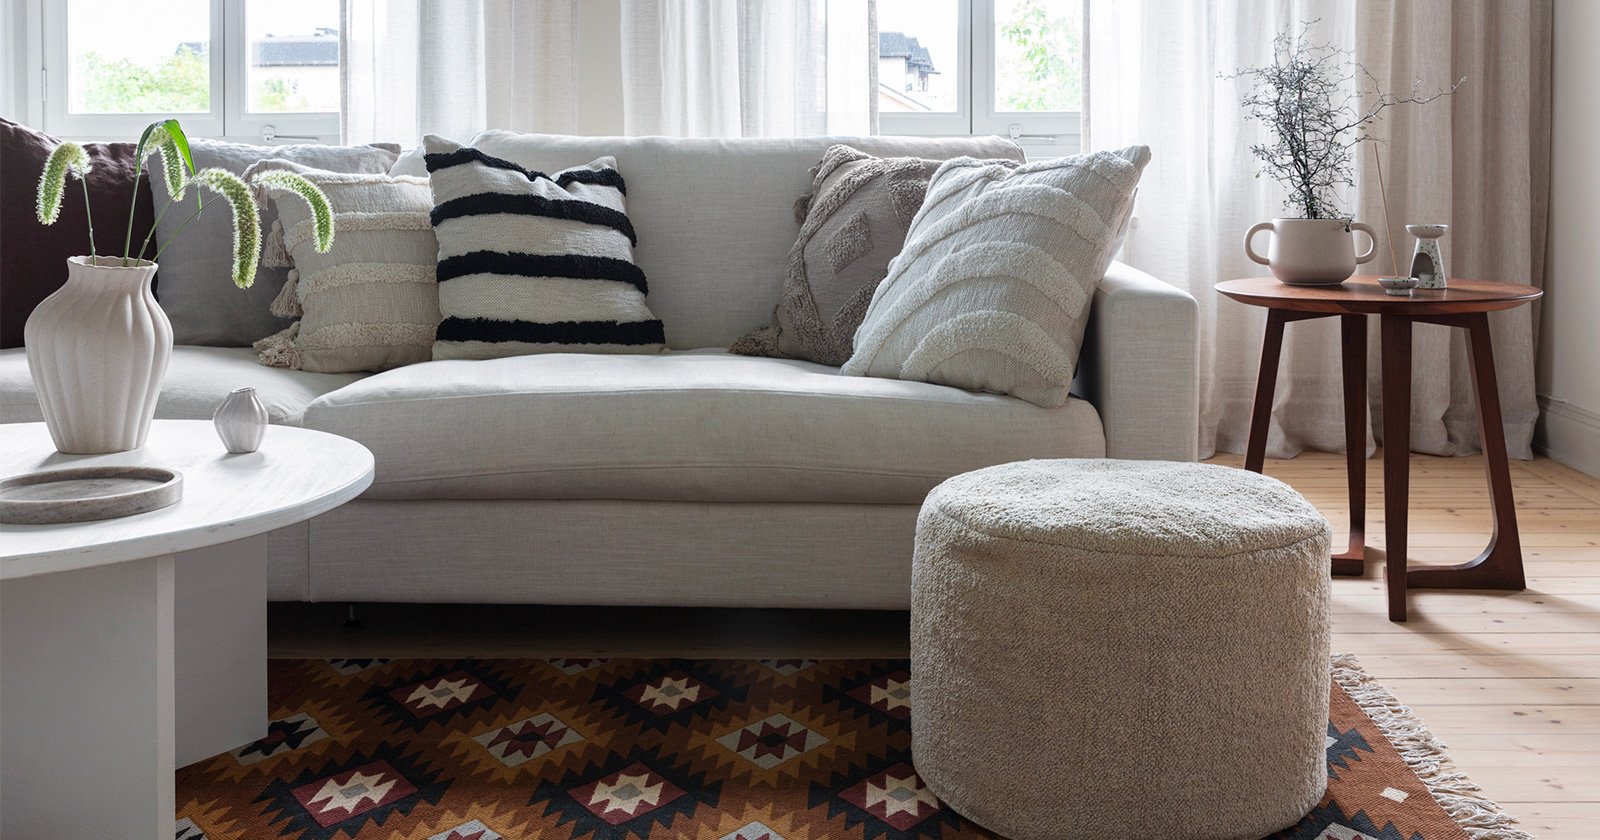 Olohuone, jossa on valkoinen sohva tuftatuilla tyynyillä, värikäs kuvioitu matto, jonka päällä on rahi